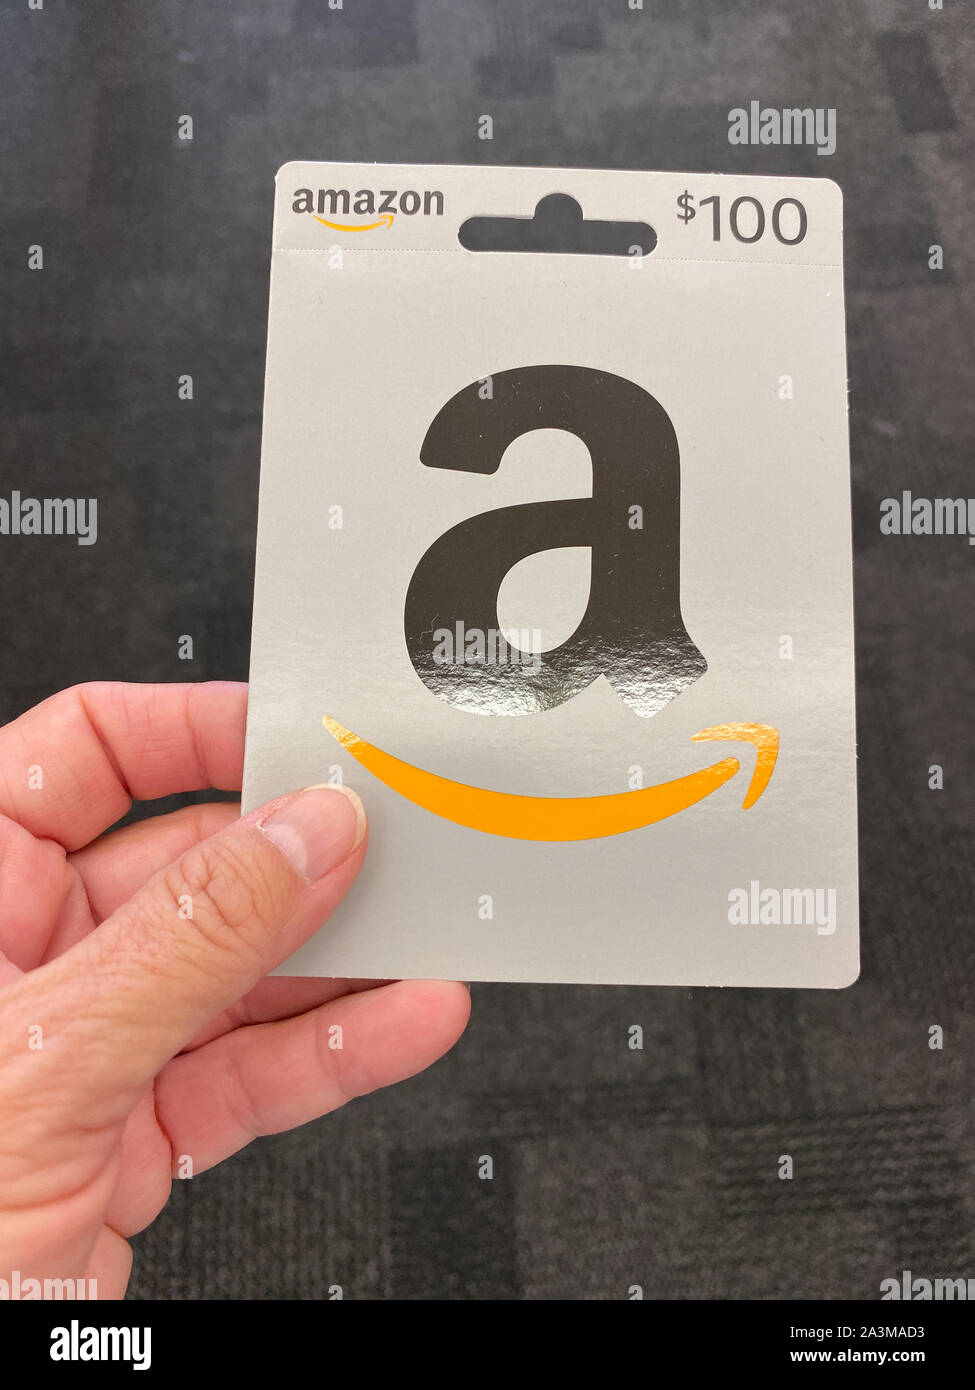 Orlando,FL/USA-10/7/19: Un Amazon dono carta pronti per una persona di acquisto come il regalo perfetto per un familiare o un amico. Foto Stock